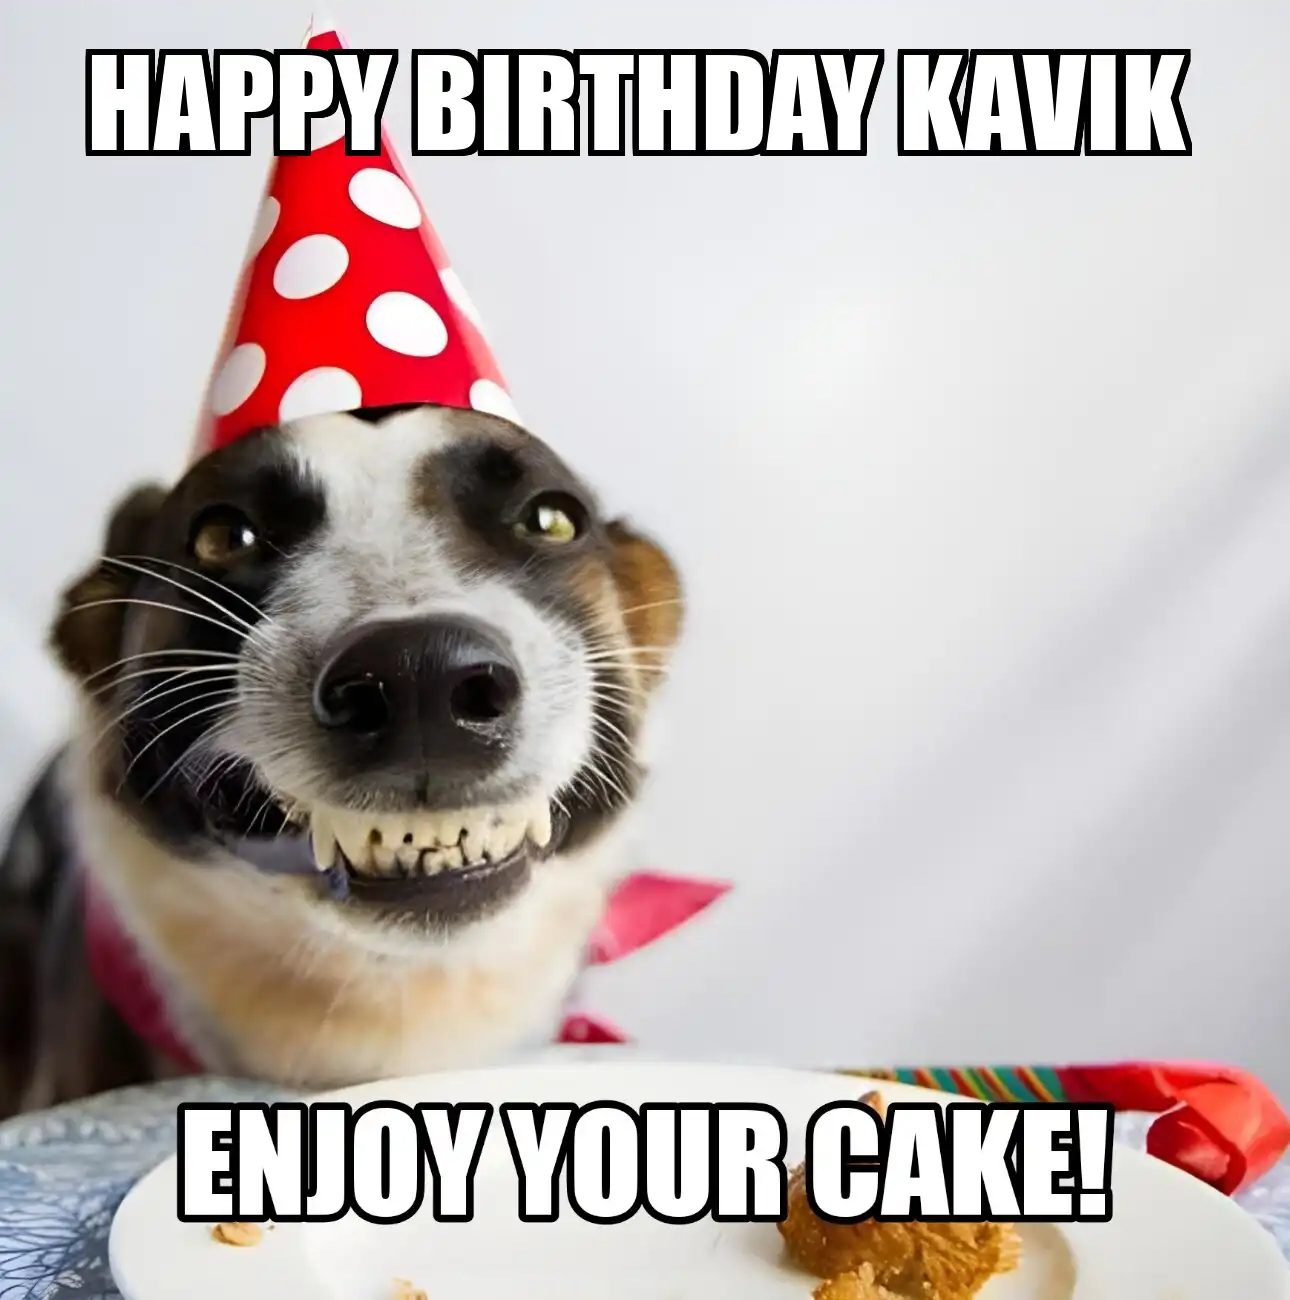 Happy Birthday Kavik Enjoy Your Cake Dog Meme